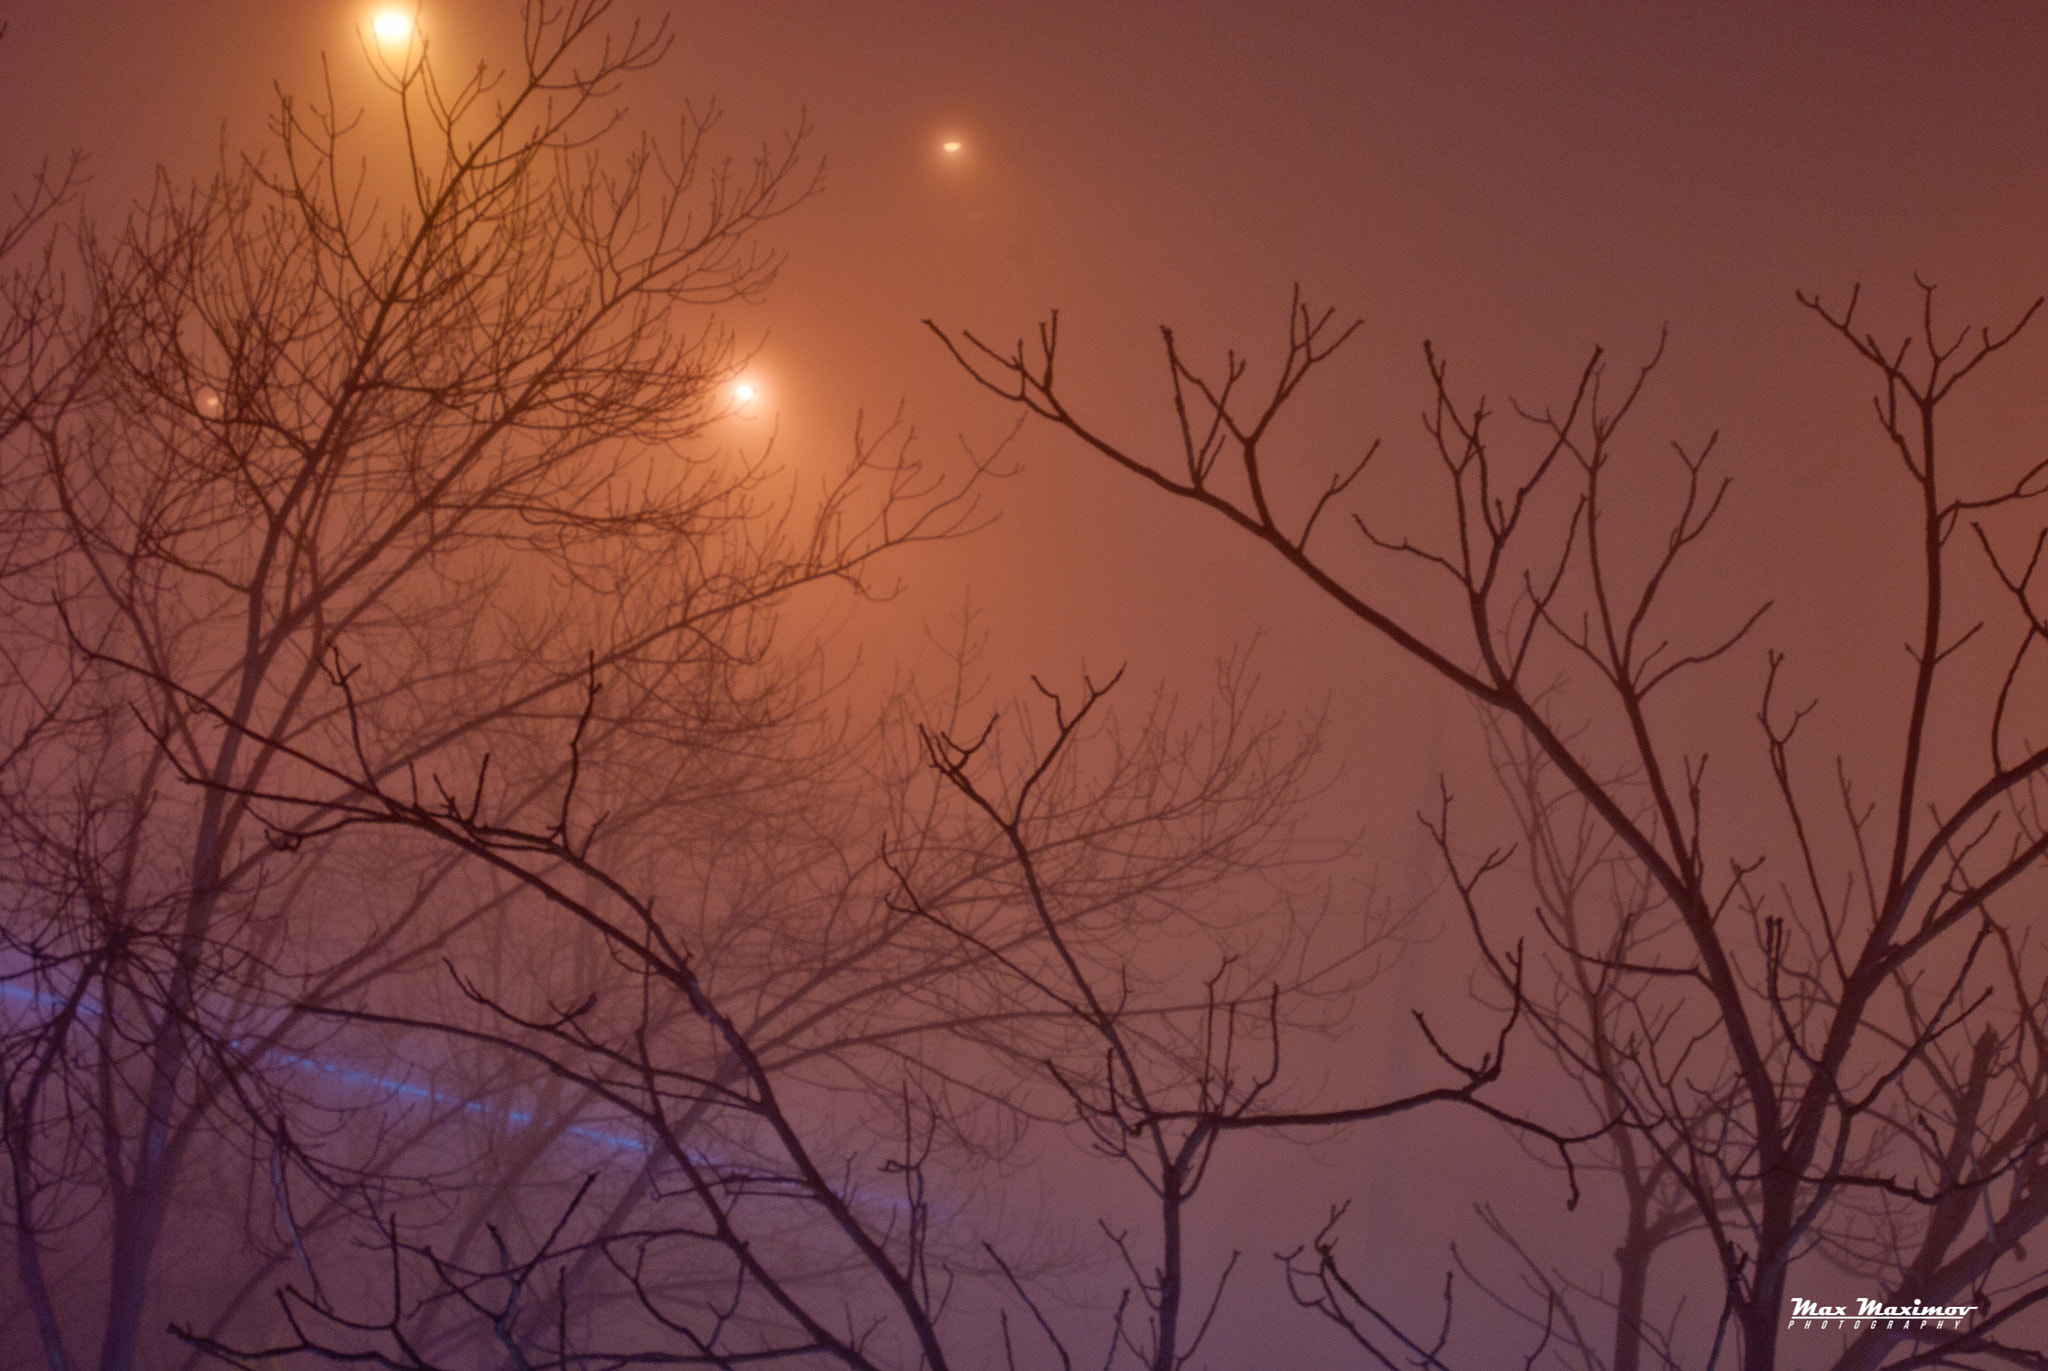 AF Zoom-Nikkor 24-120mm f/3.5-5.6D IF sample photo. Night fog photography